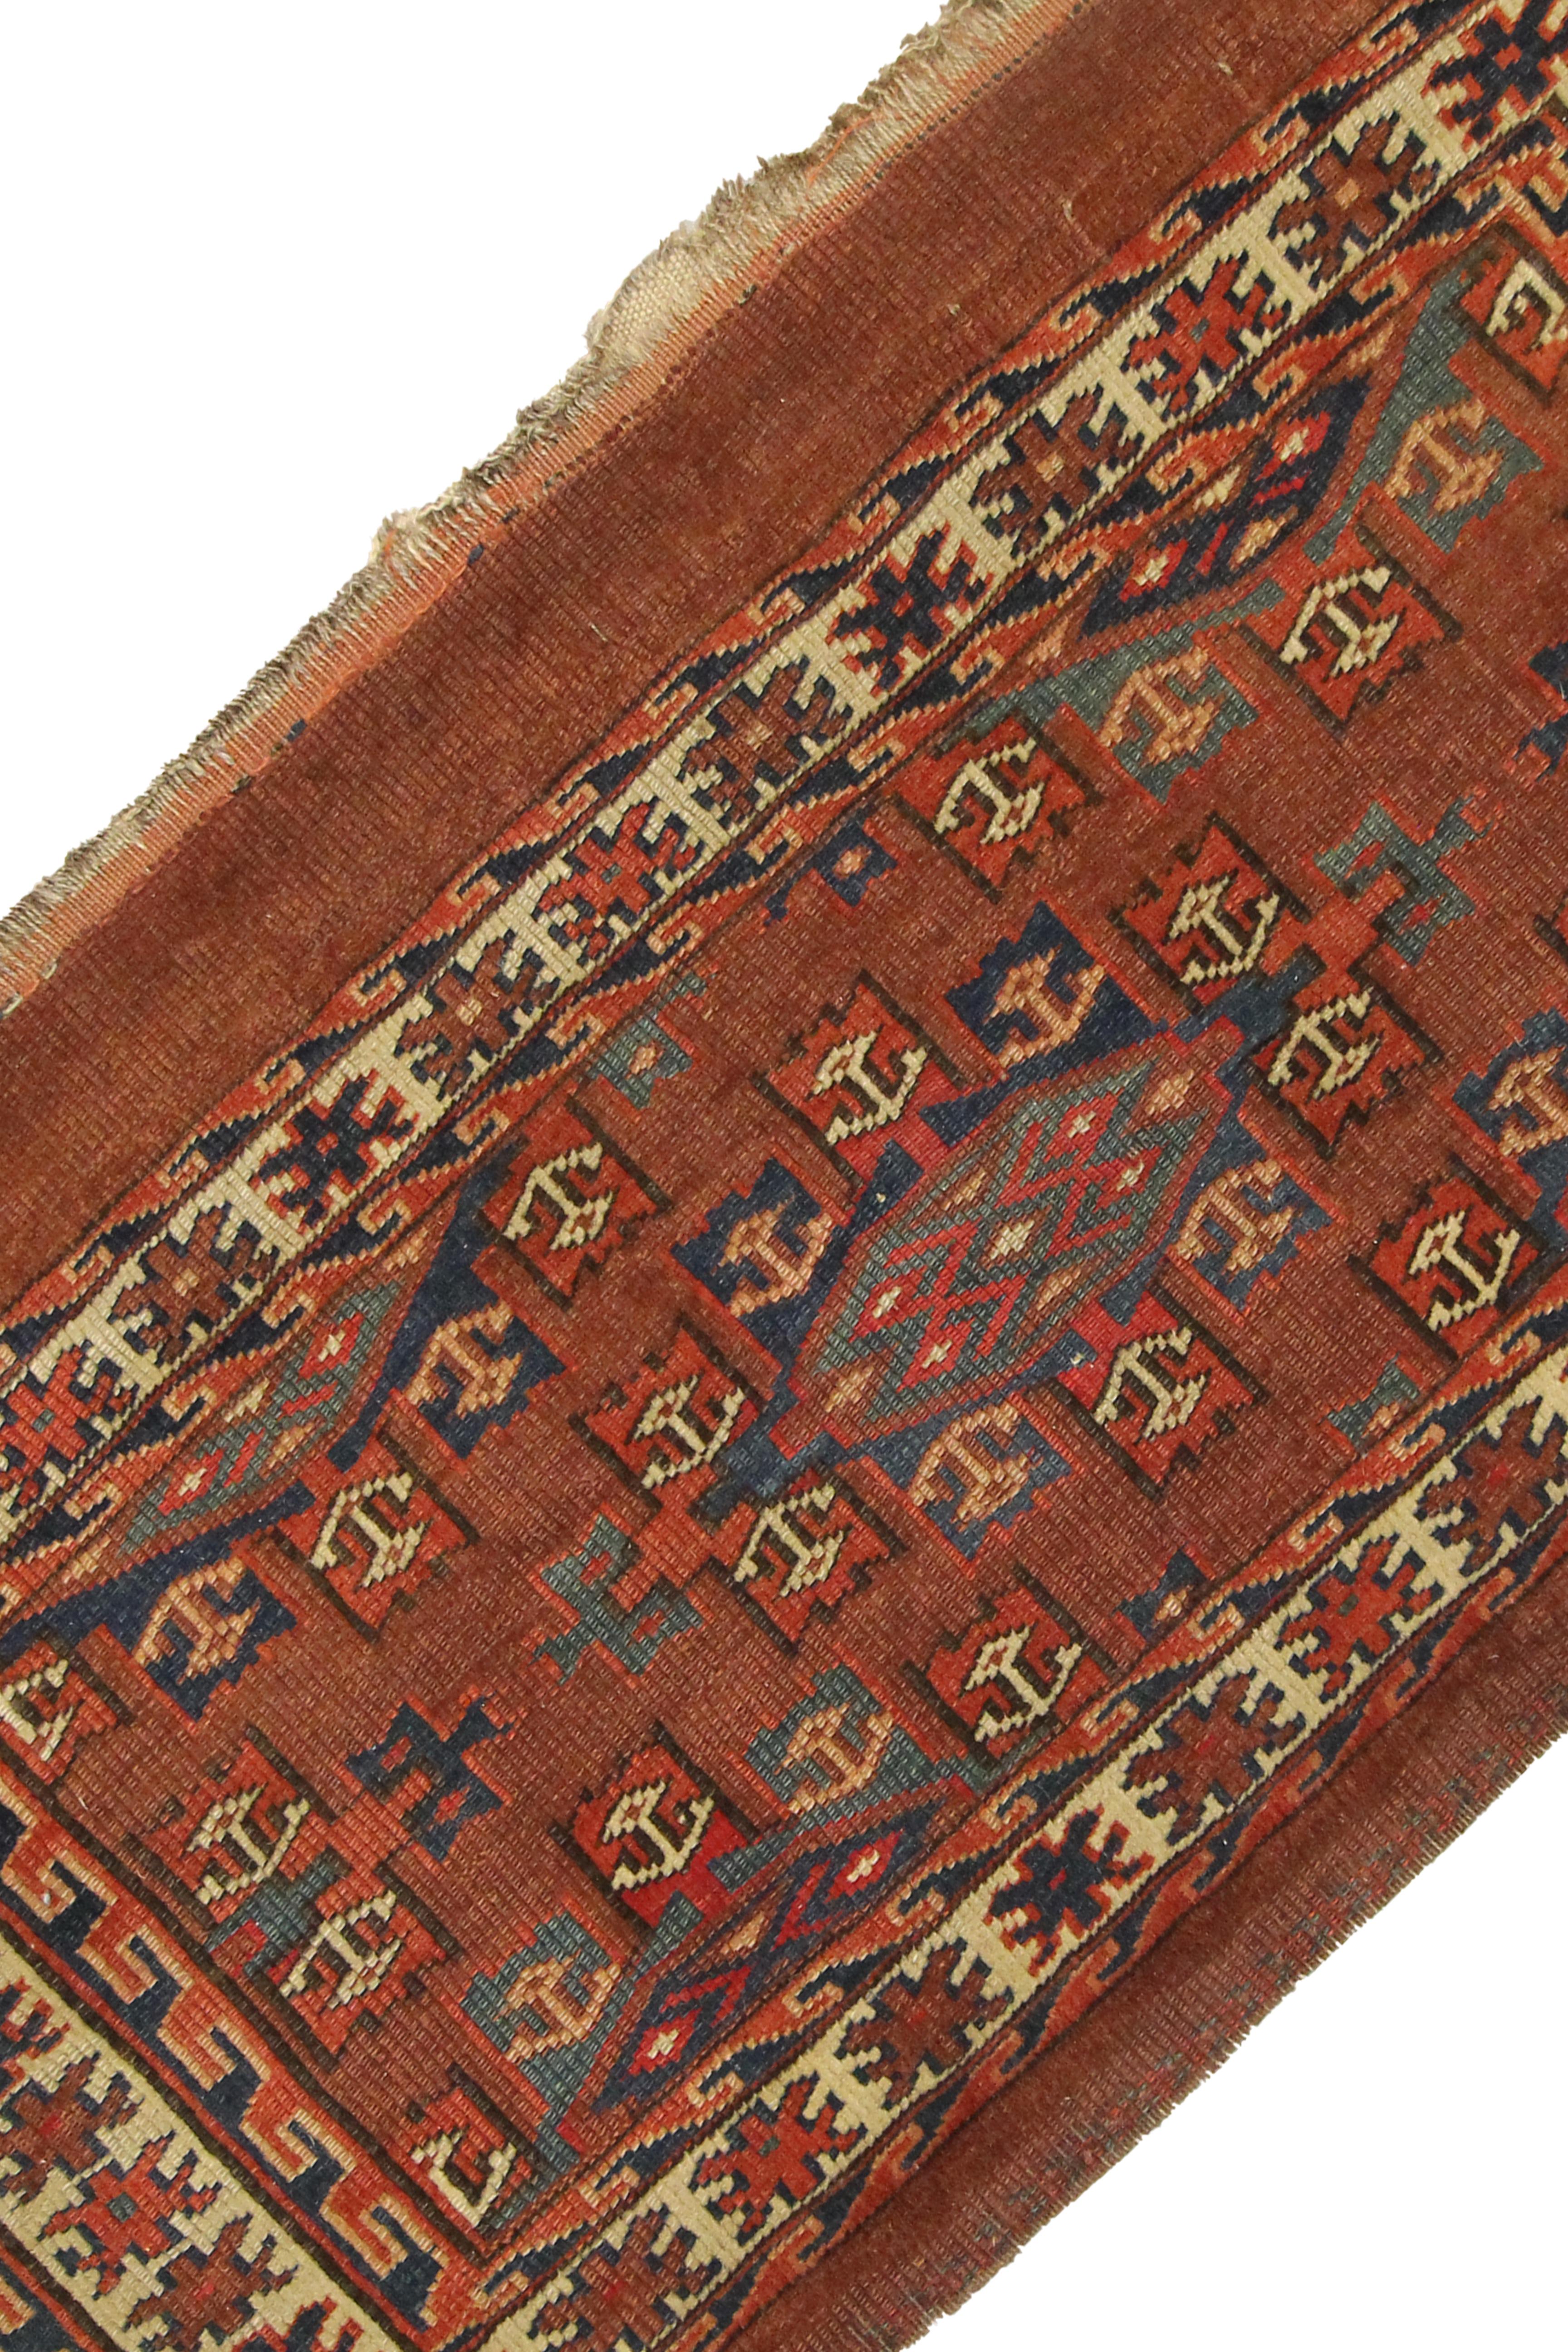 Dieser einzigartige Chuval-Teppich ist ein seltener antiker Teppich, der in den 1890er Jahren mit einem traditionellen turkmenischen Muster gewebt wurde. Das zentrale Muster ist ein traditionelles Design mit geometrischen Mustern in blauen, beigen